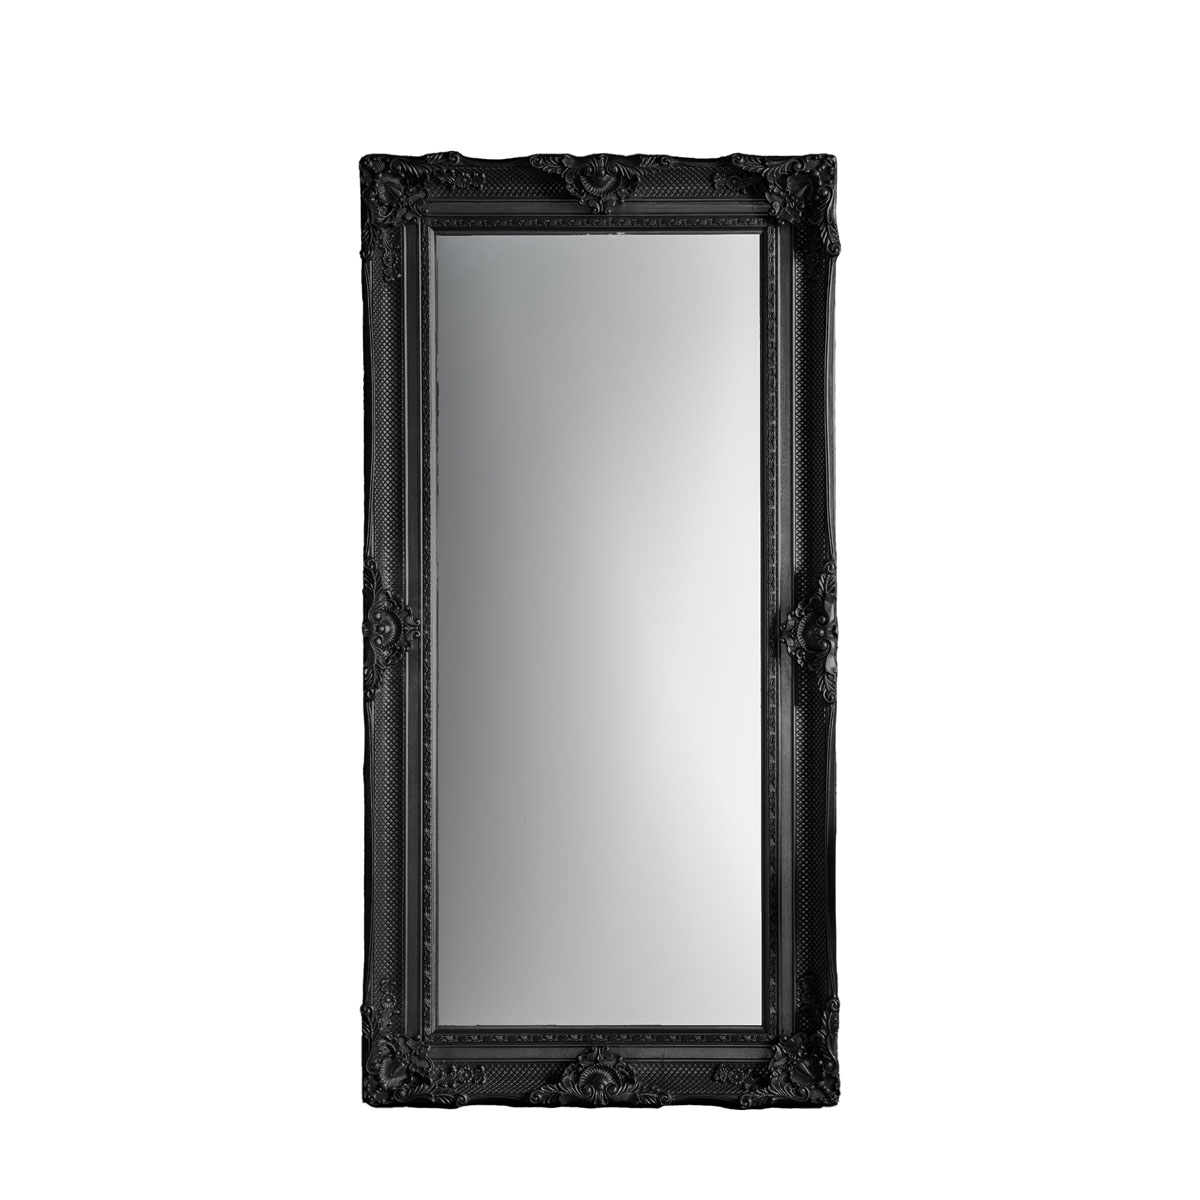 Valois Leaner Mirror Black 1825x960mm